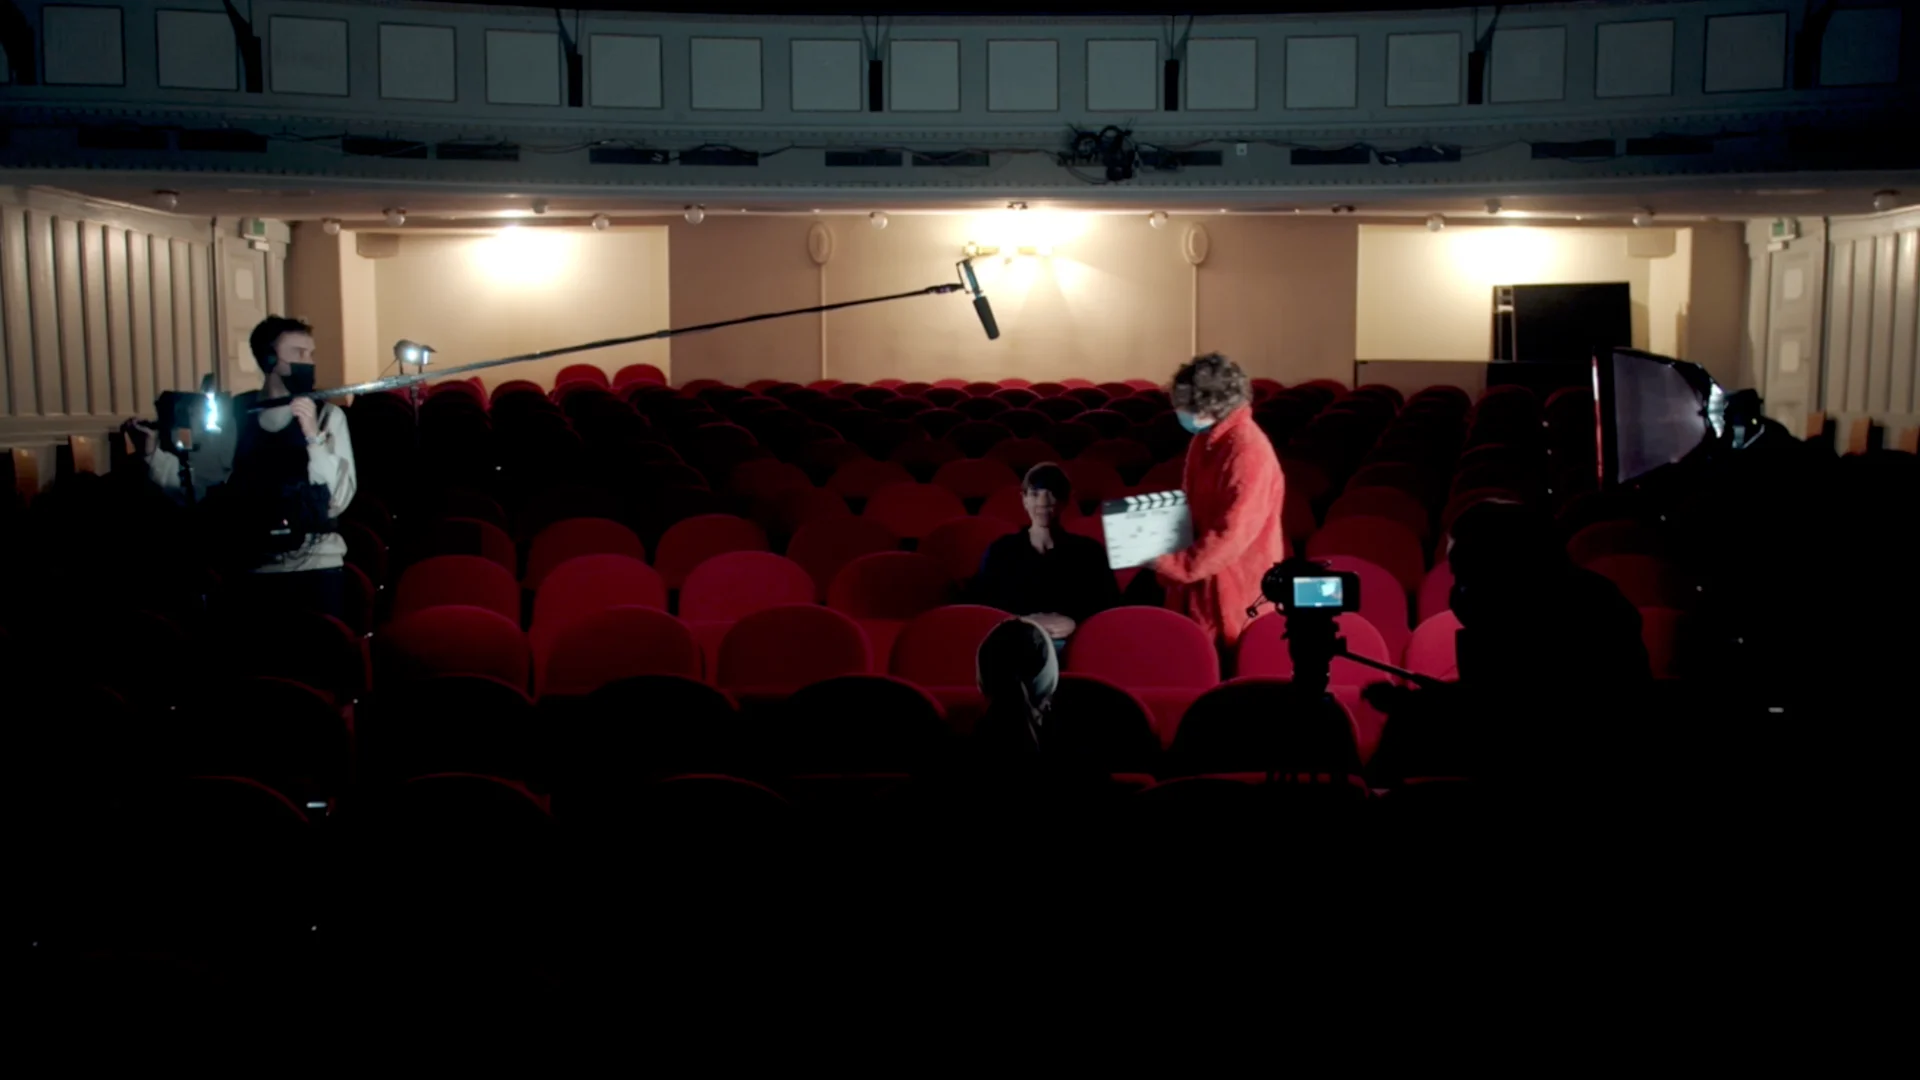 Cornland Studio - Backstage vidéo d'une salle de cinéma, une femme est assise dans des sièges rouge